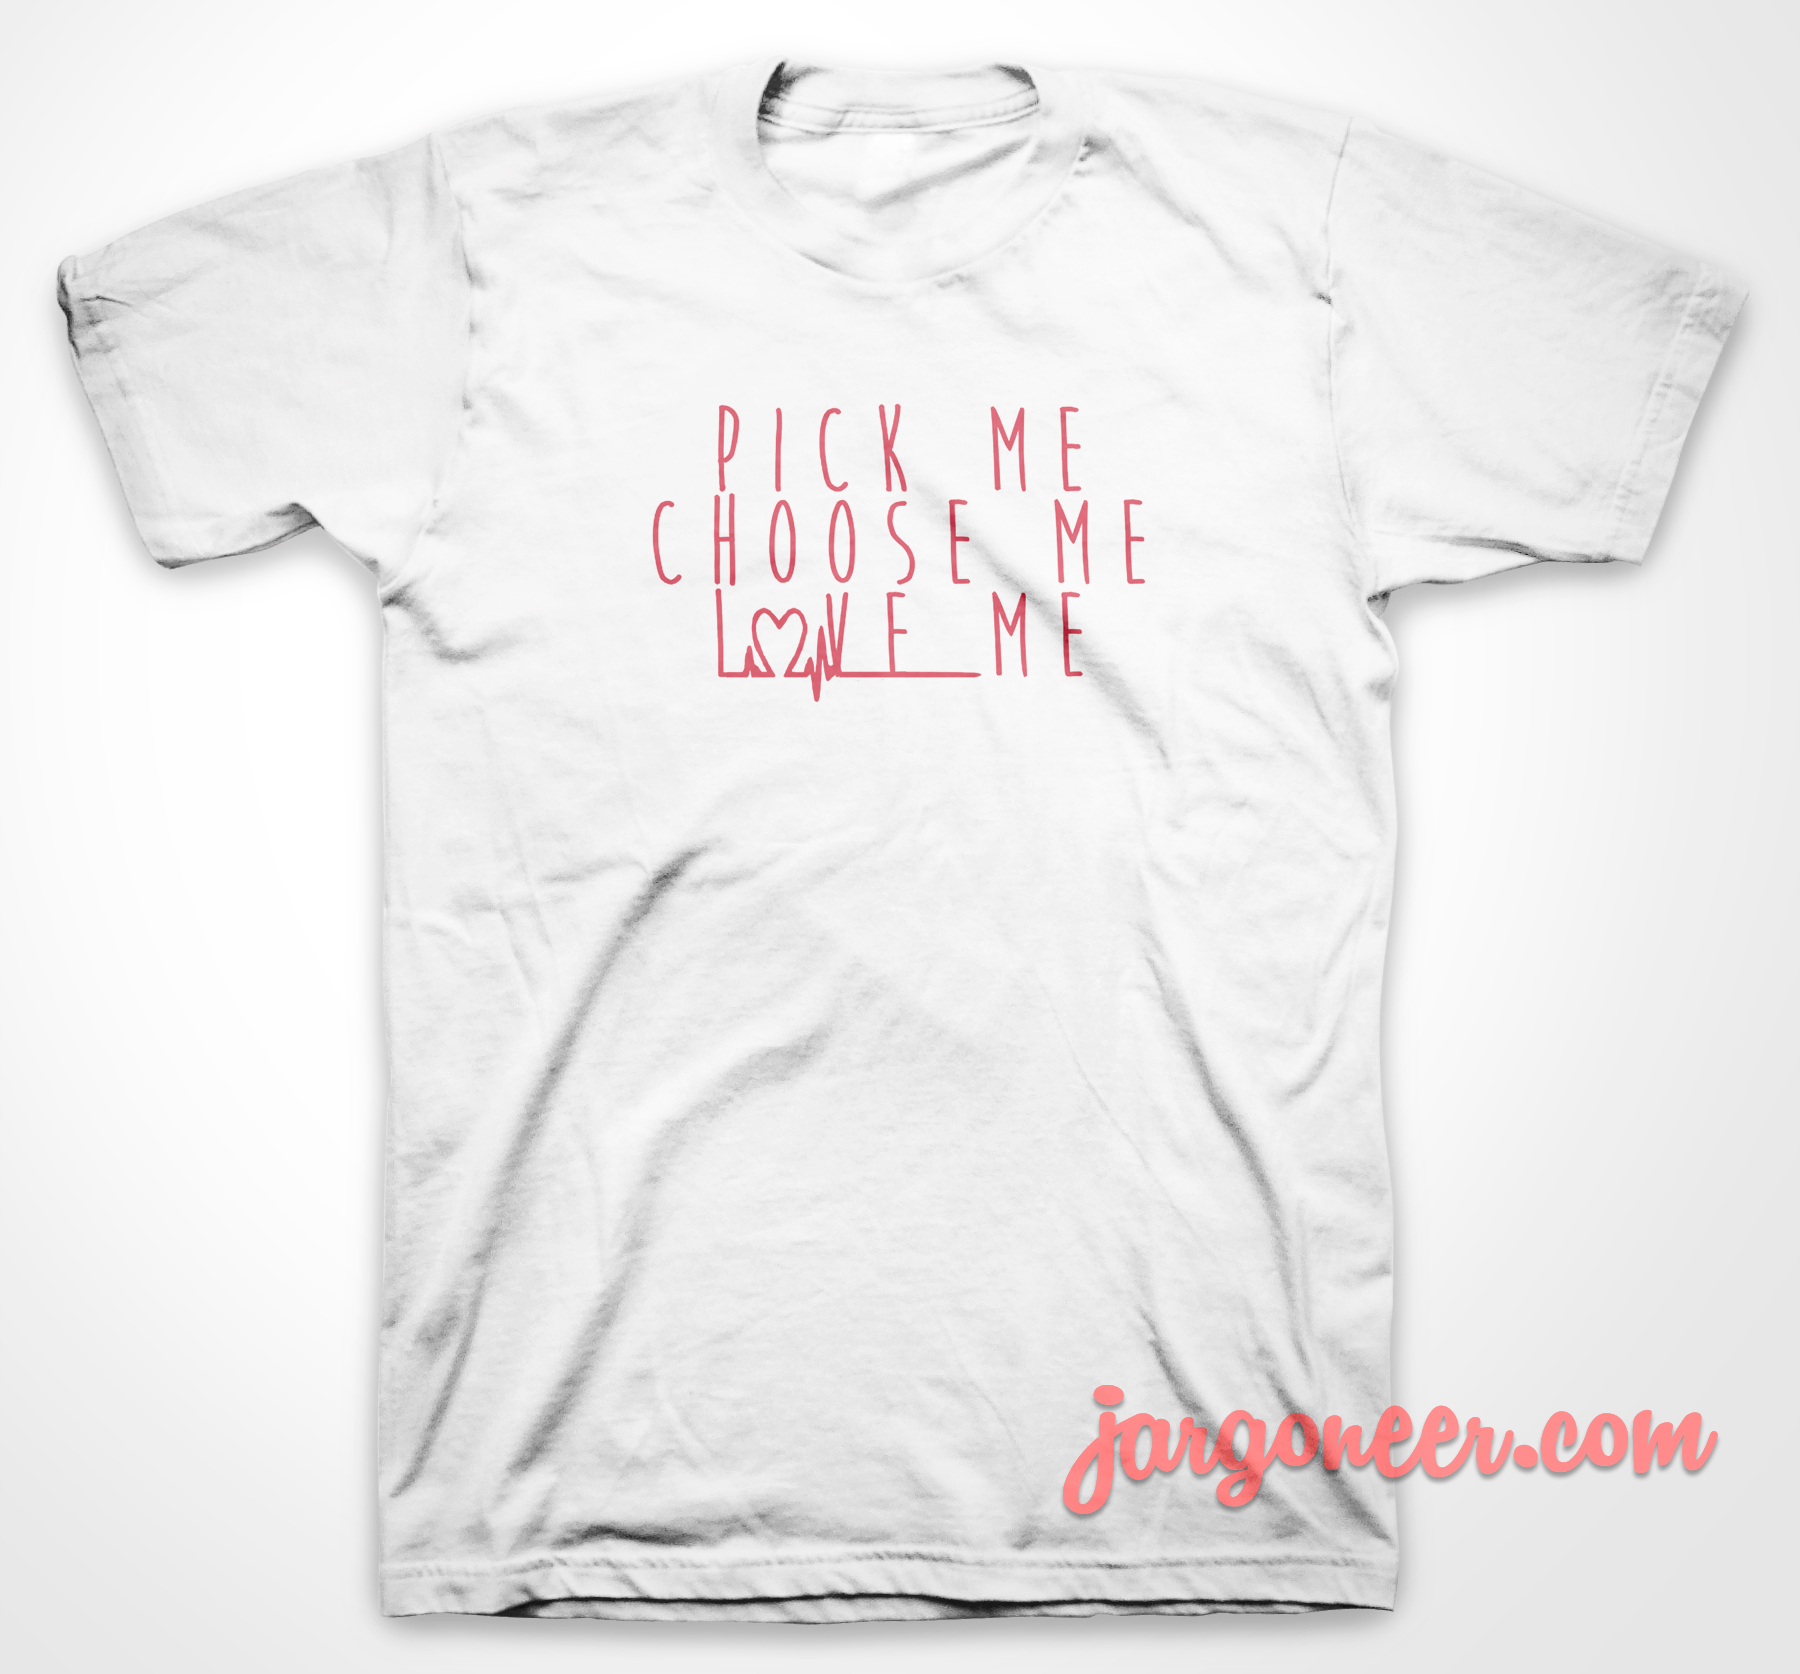 Pick Me Choose Me Love Me - Shop Unique Graphic Cool Shirt Designs